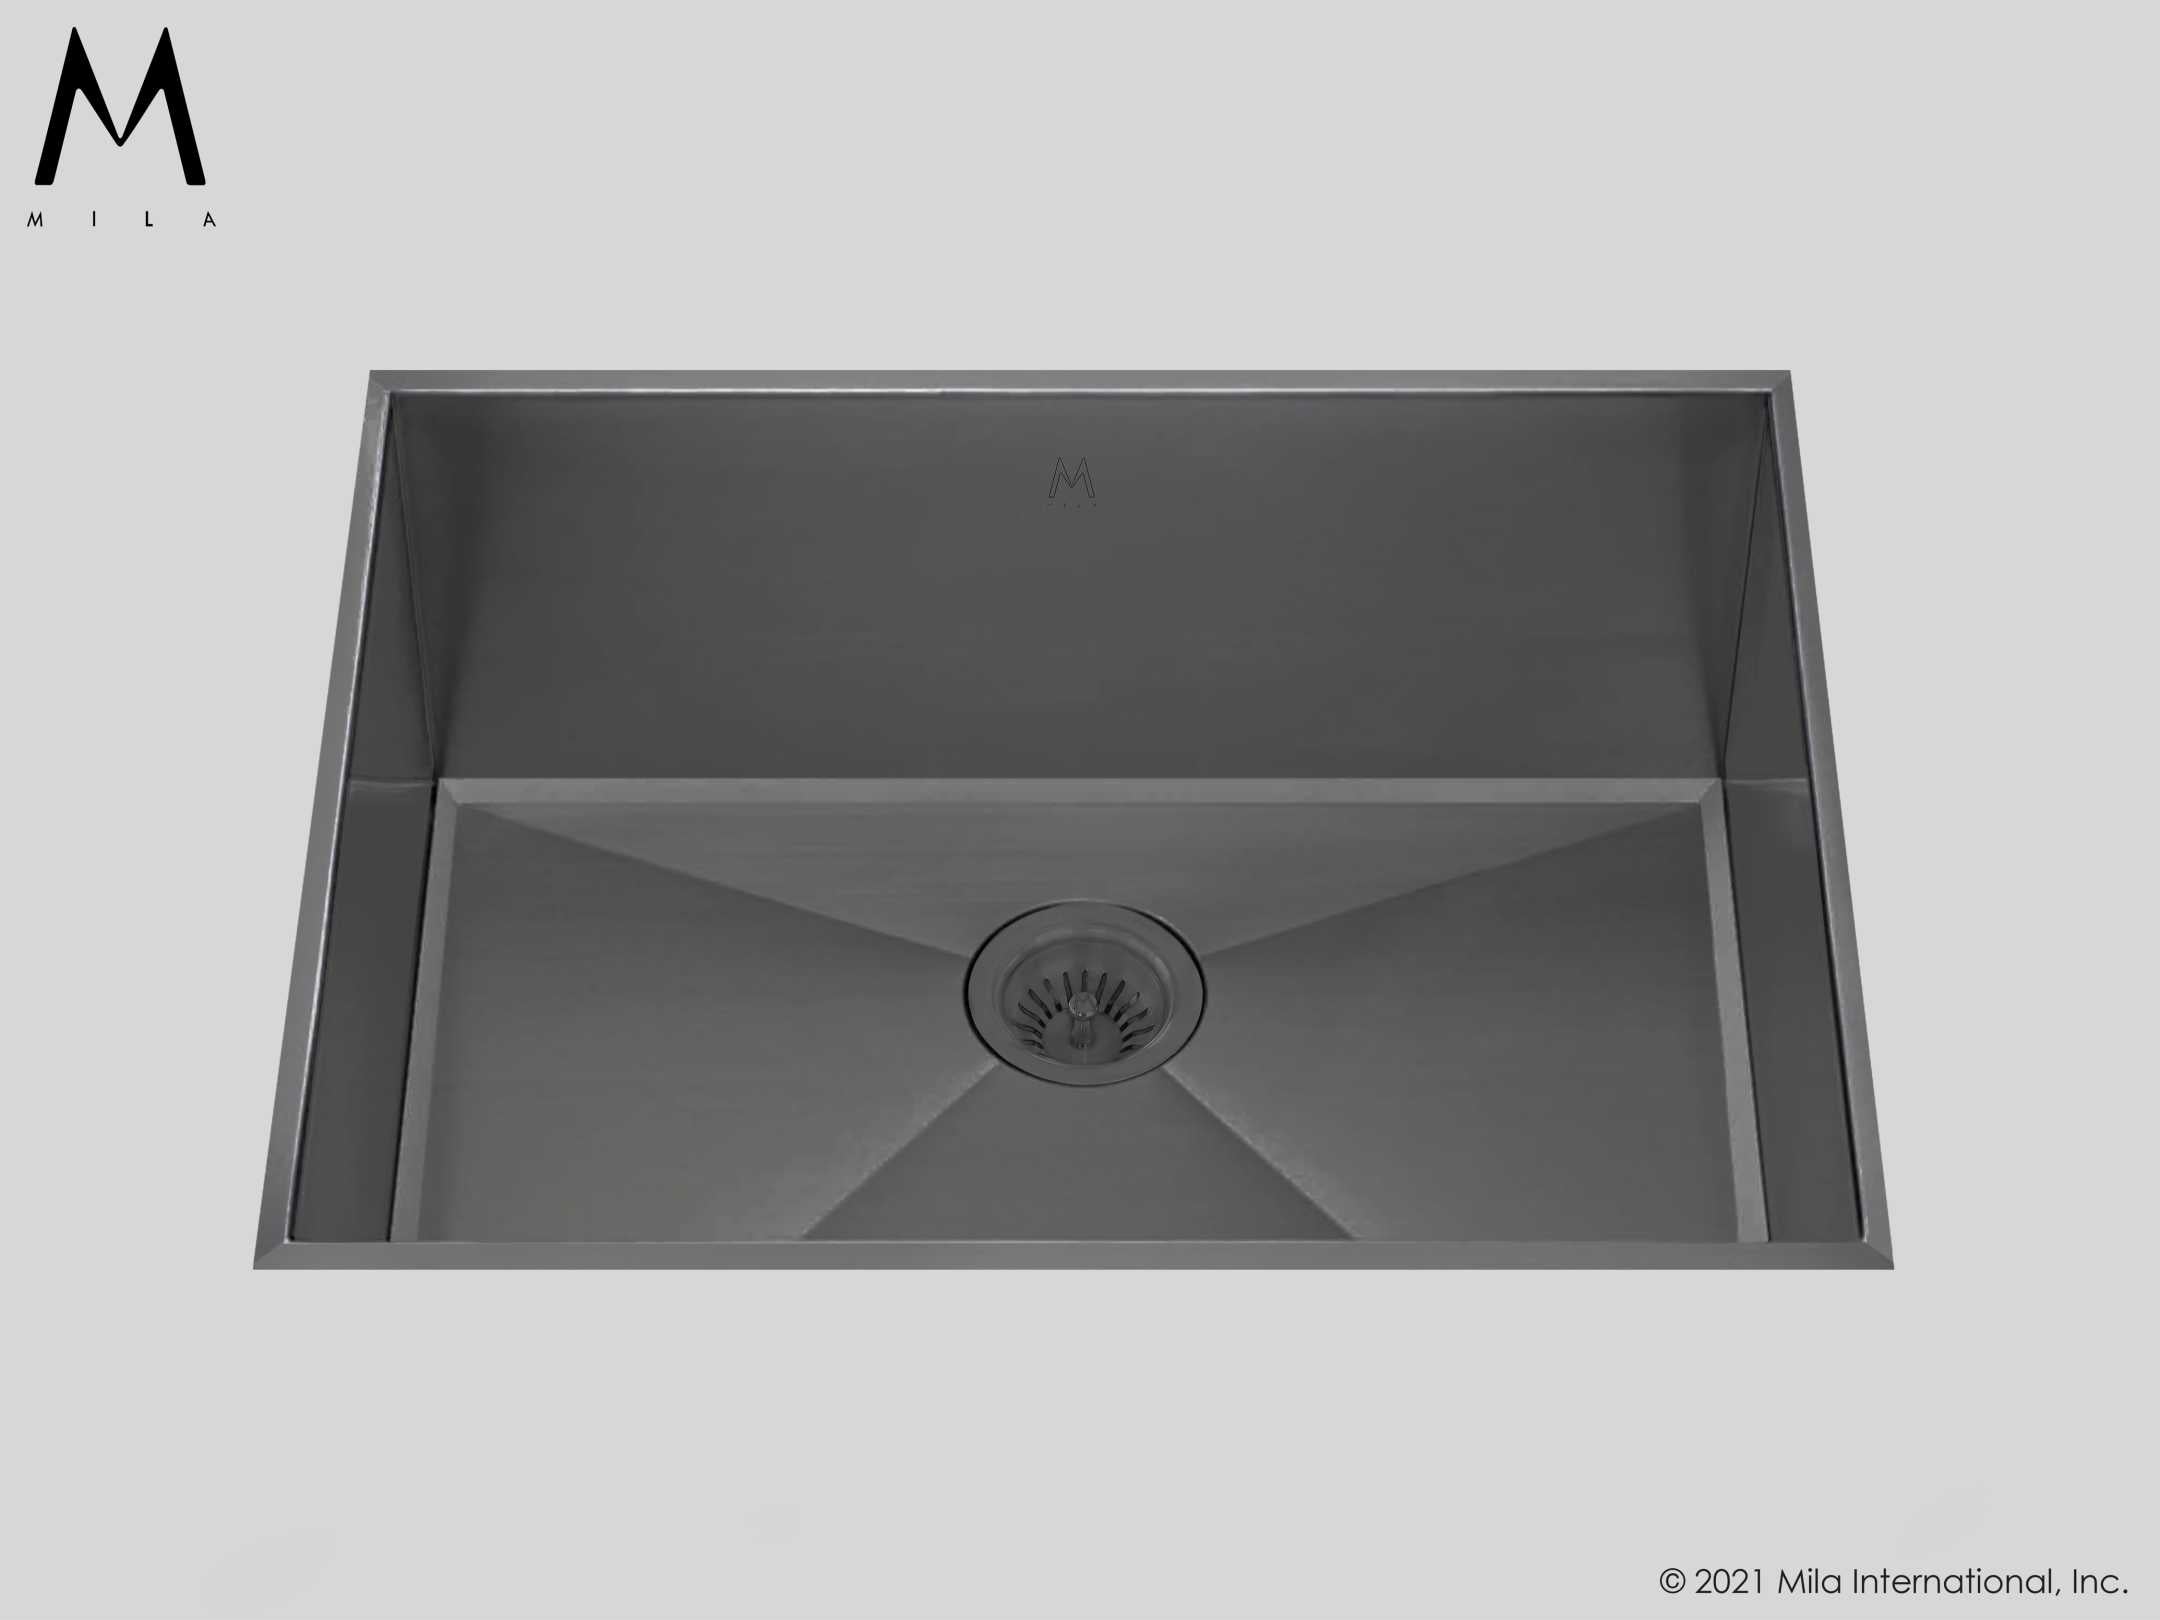 MILA LOUVRE Low Profile Single Bowl Flush-Mount 24x 17.5 Kitchen Sink